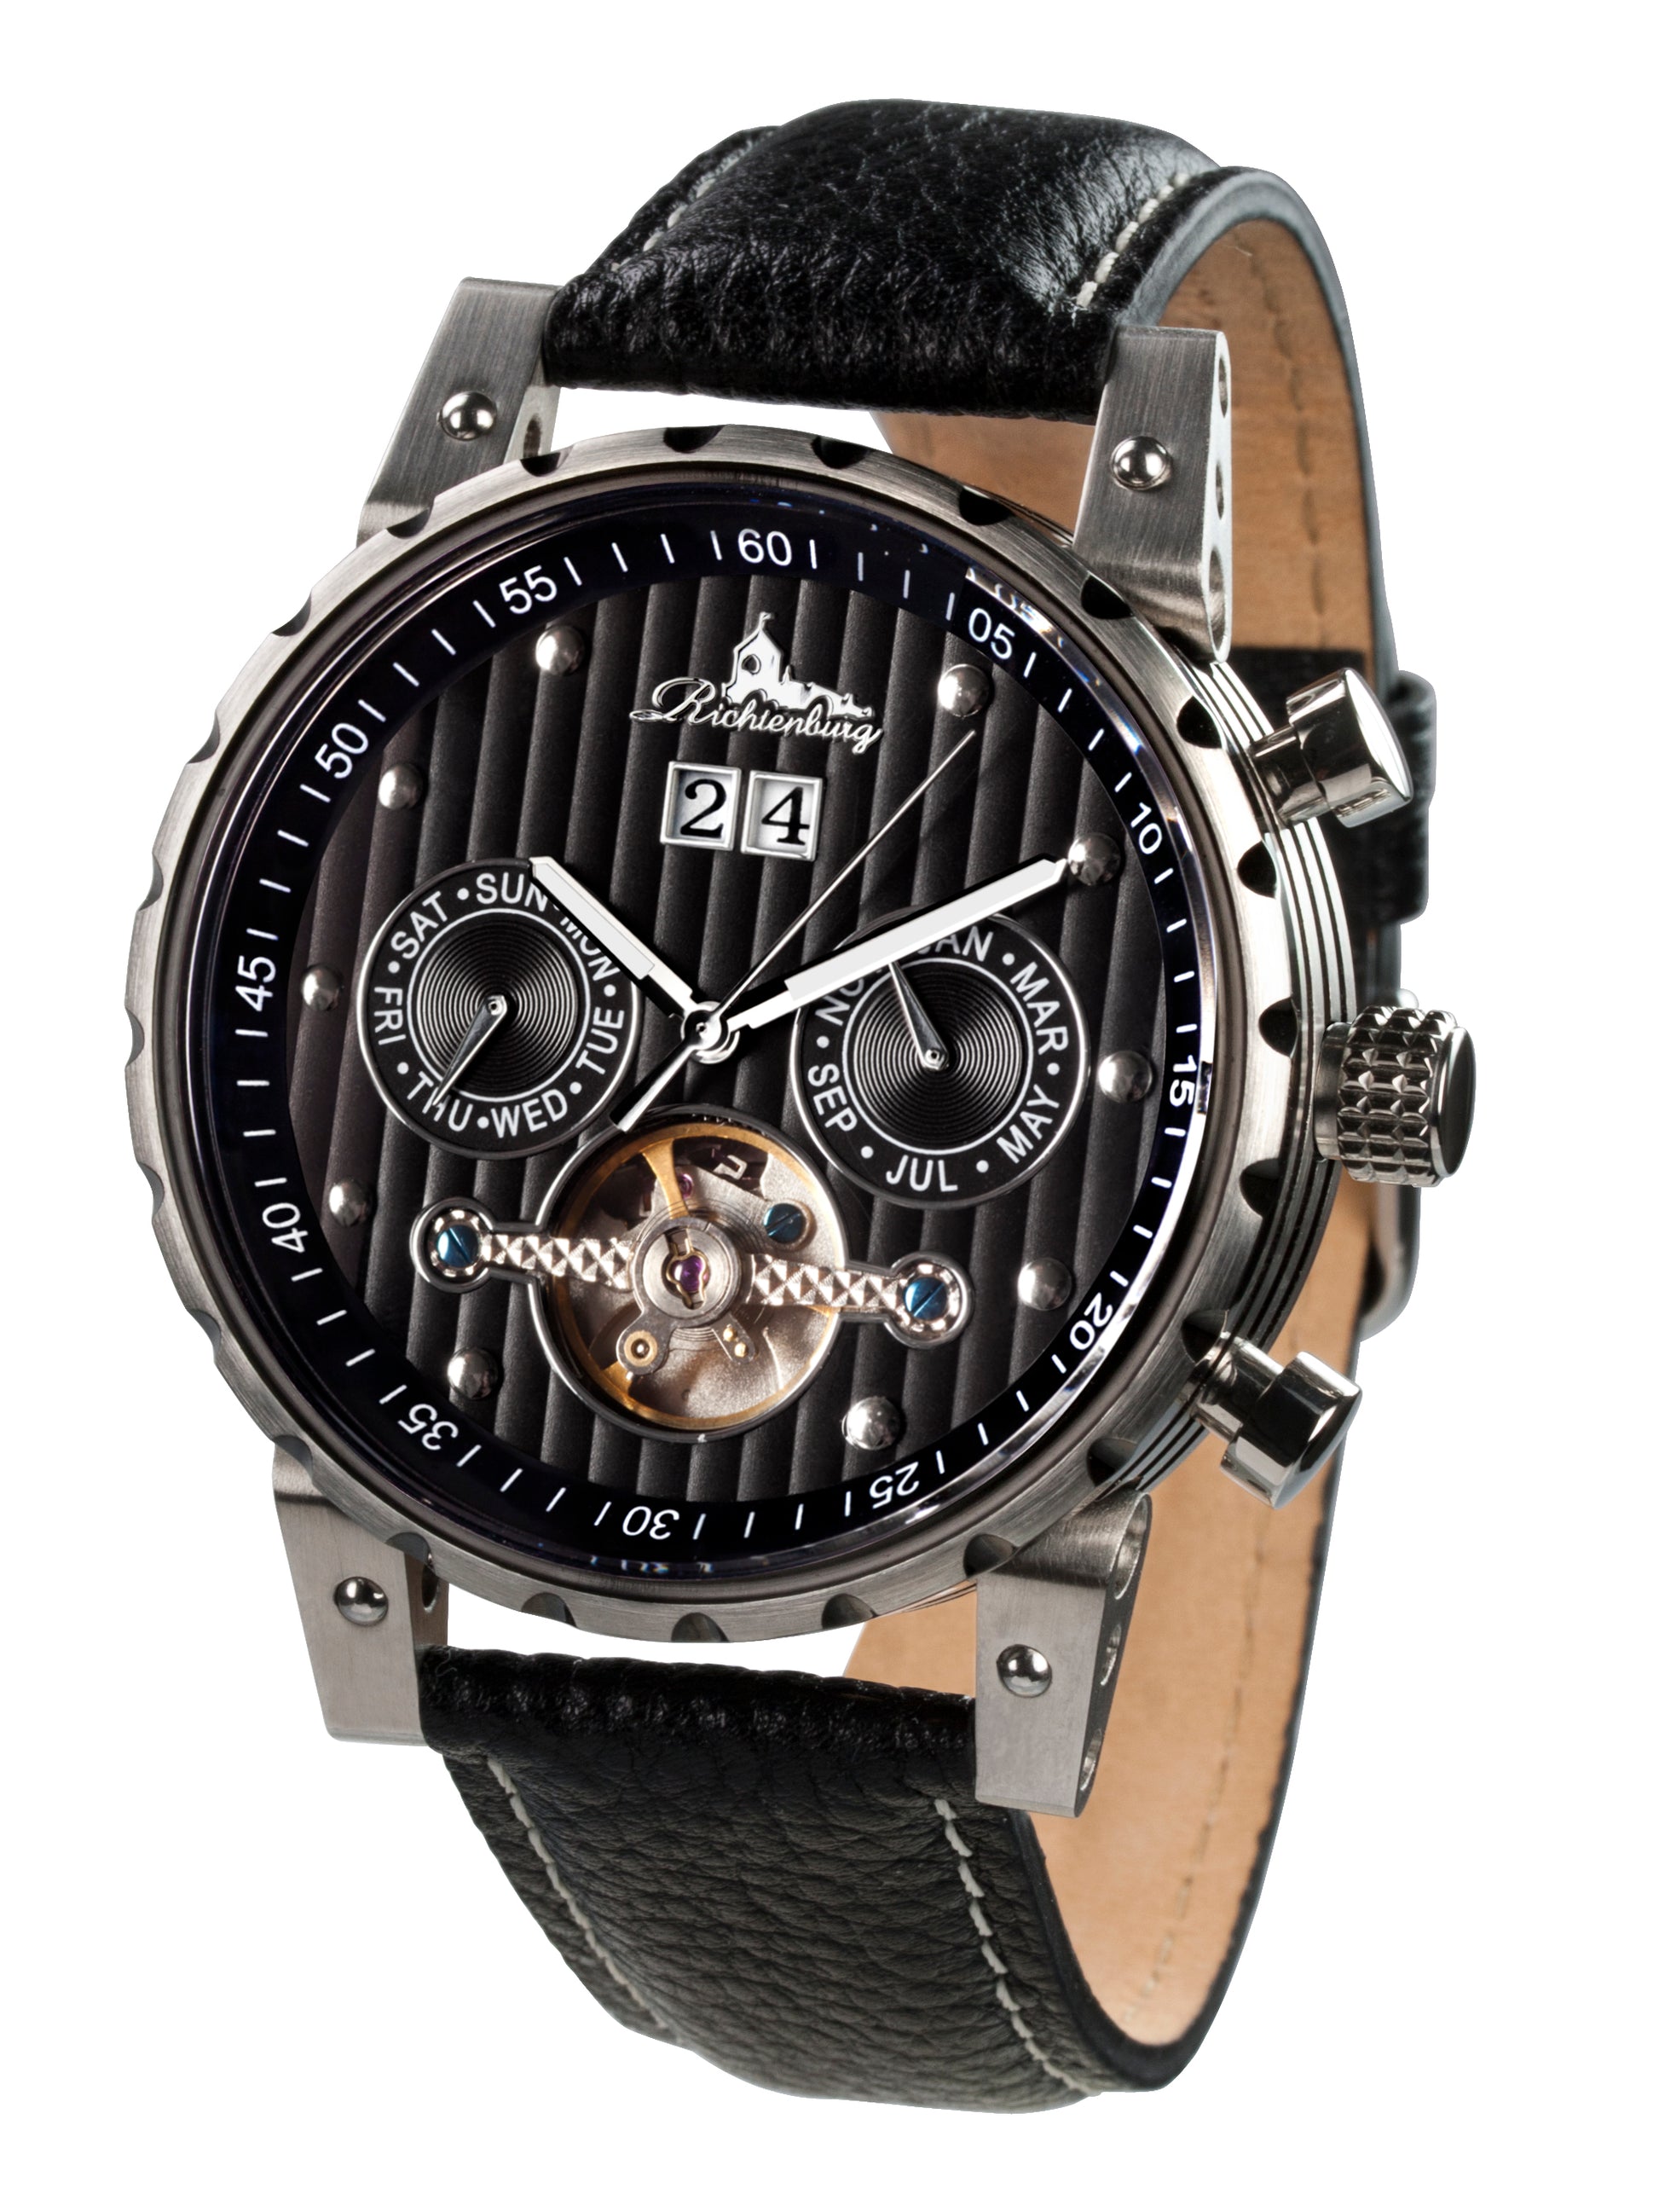 Automatic watches — Newport — Richtenburg — black